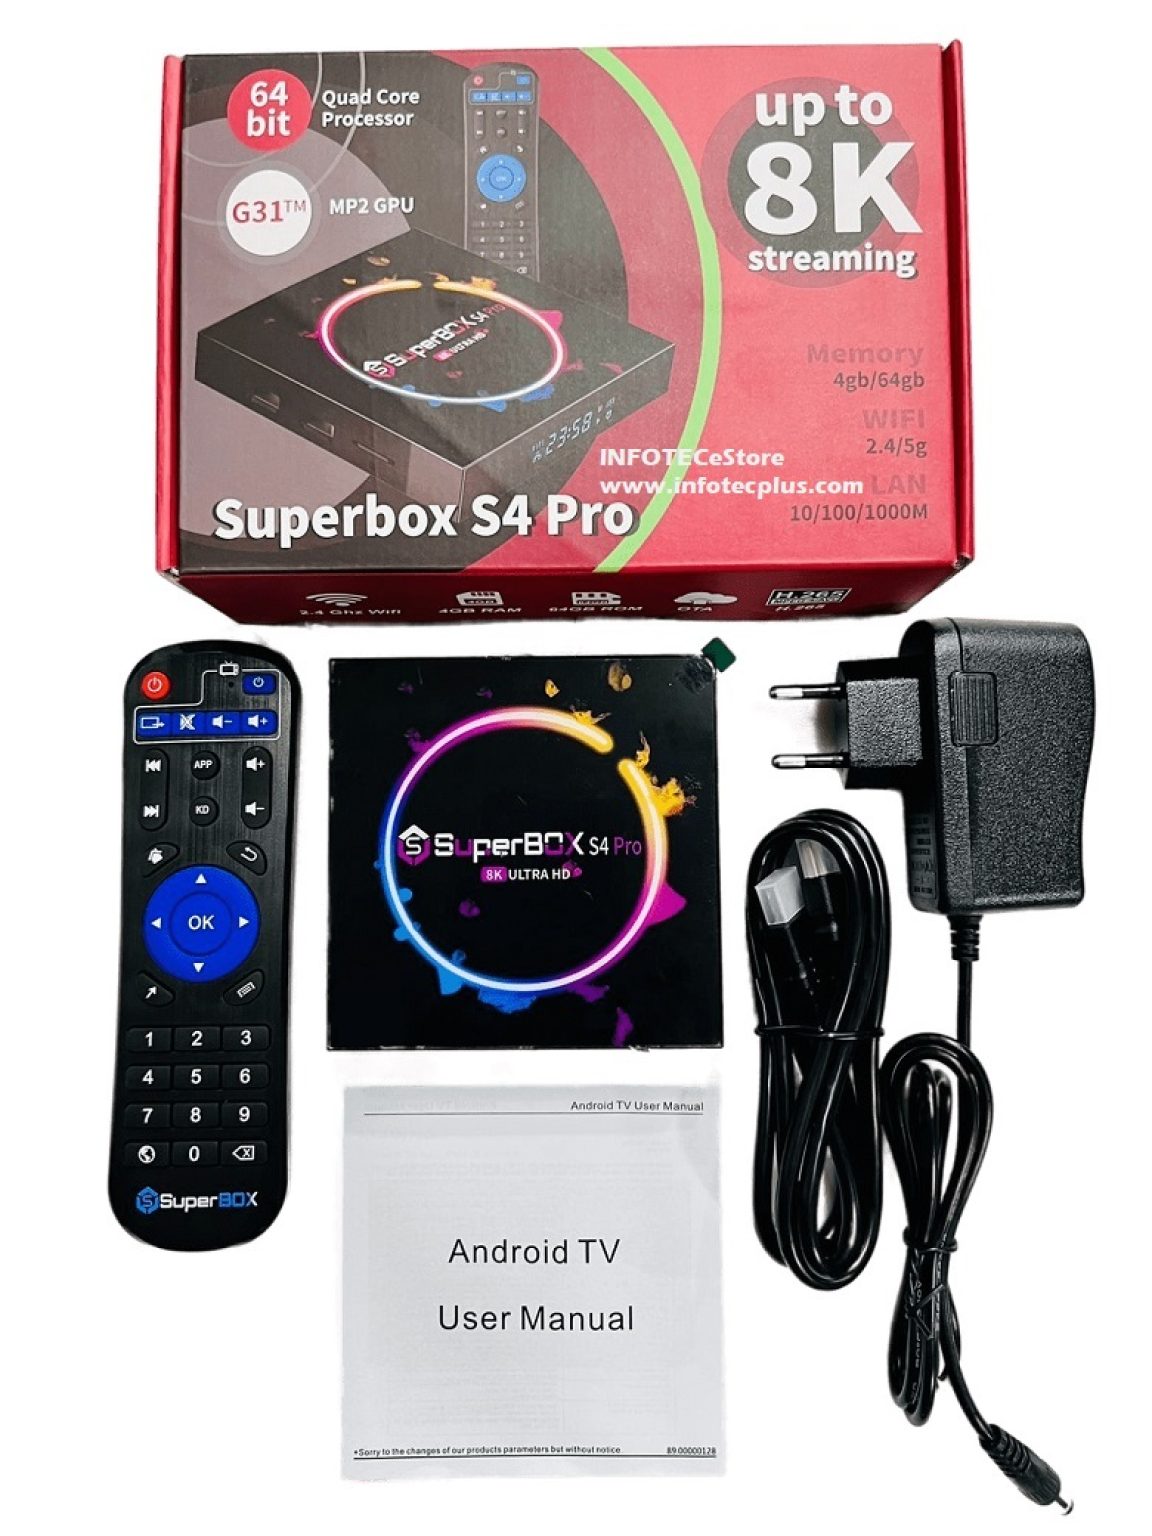 Android TV Superbox S4 Pro 8K 4Gb/64Gb Wifi 2.4G/5G Gigabit Lan